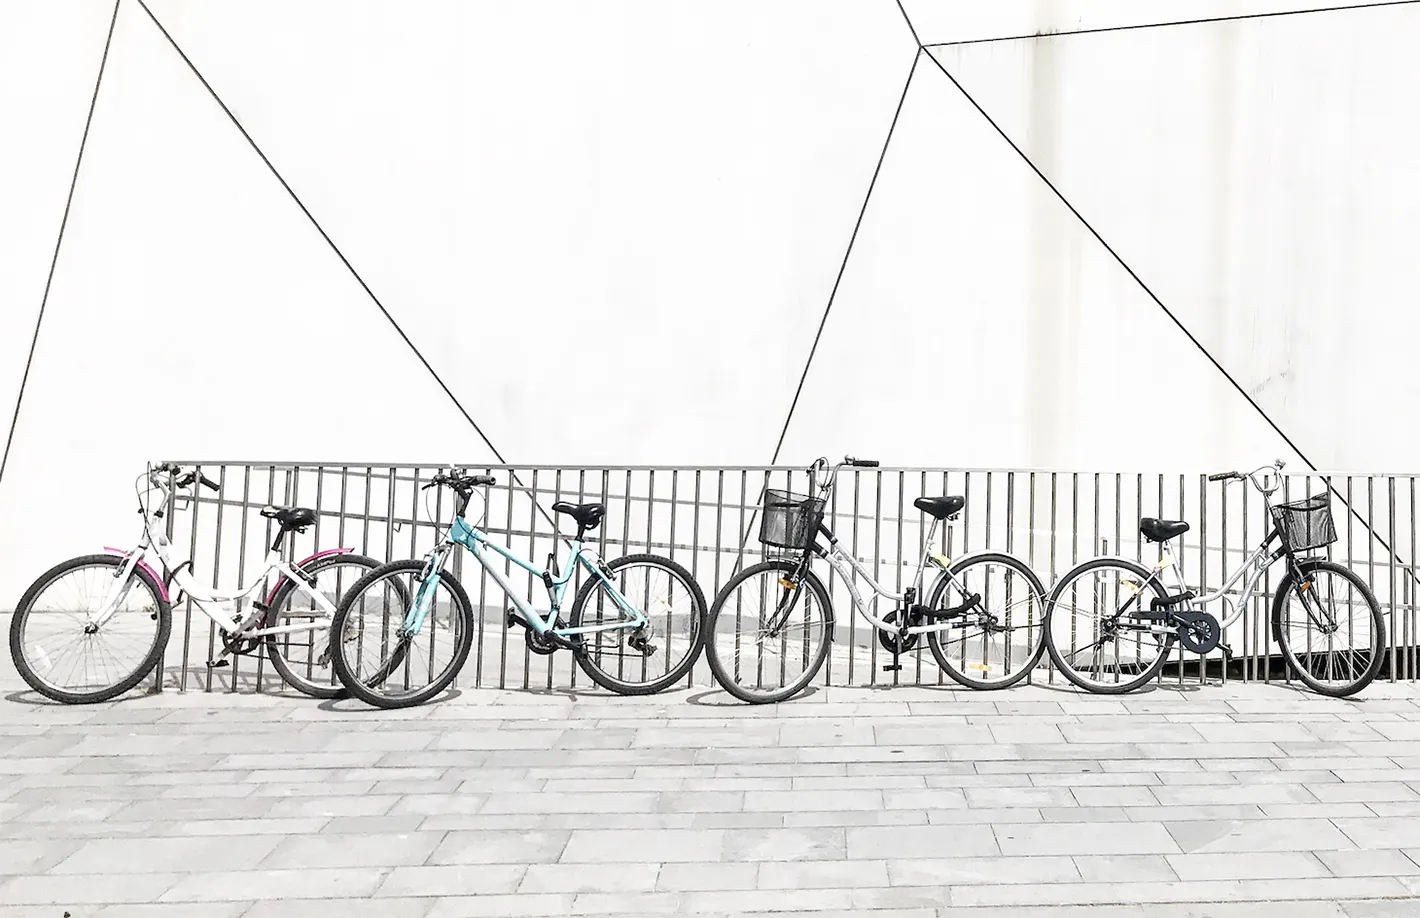 Plusieurs vélos urbains alignés stationnés le long d'une grille